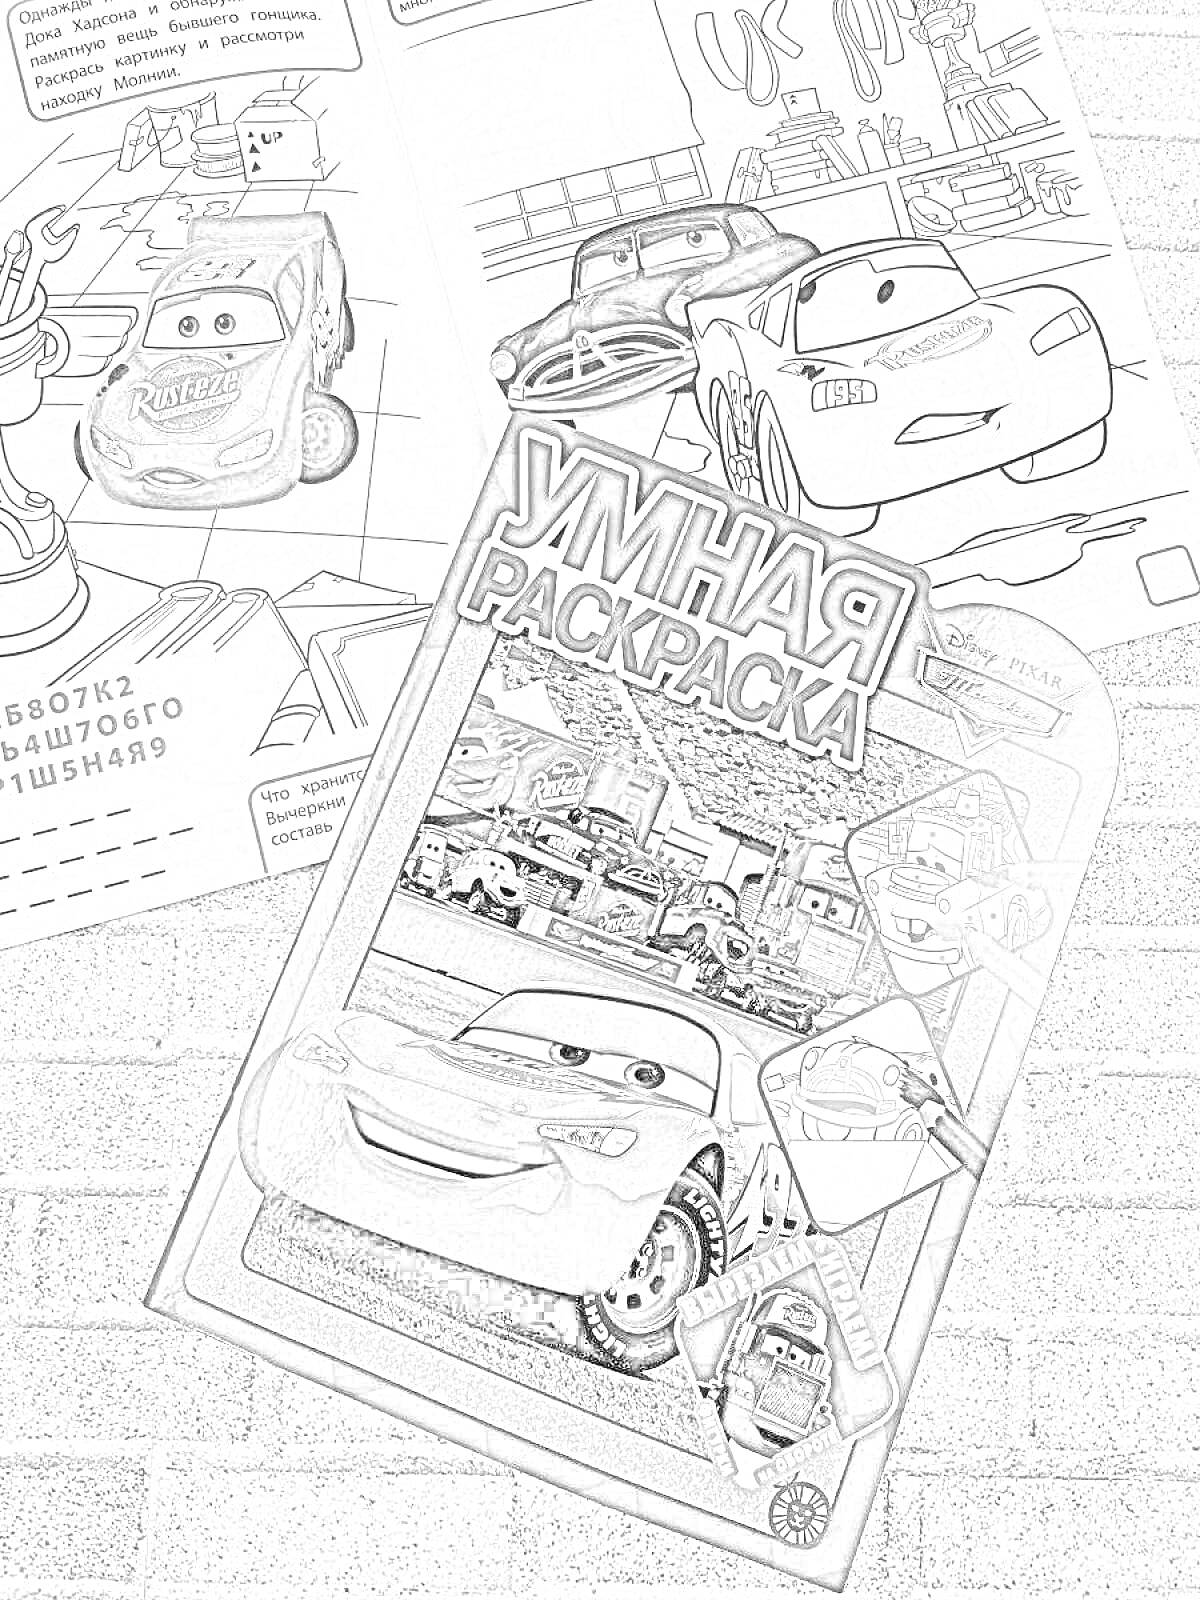 Раскраска Умная раскраска с изображением различных машин, включая гоночные машины из мультфильма, с фоновыми иллюстрациями гоночных трасс и городских пейзажей